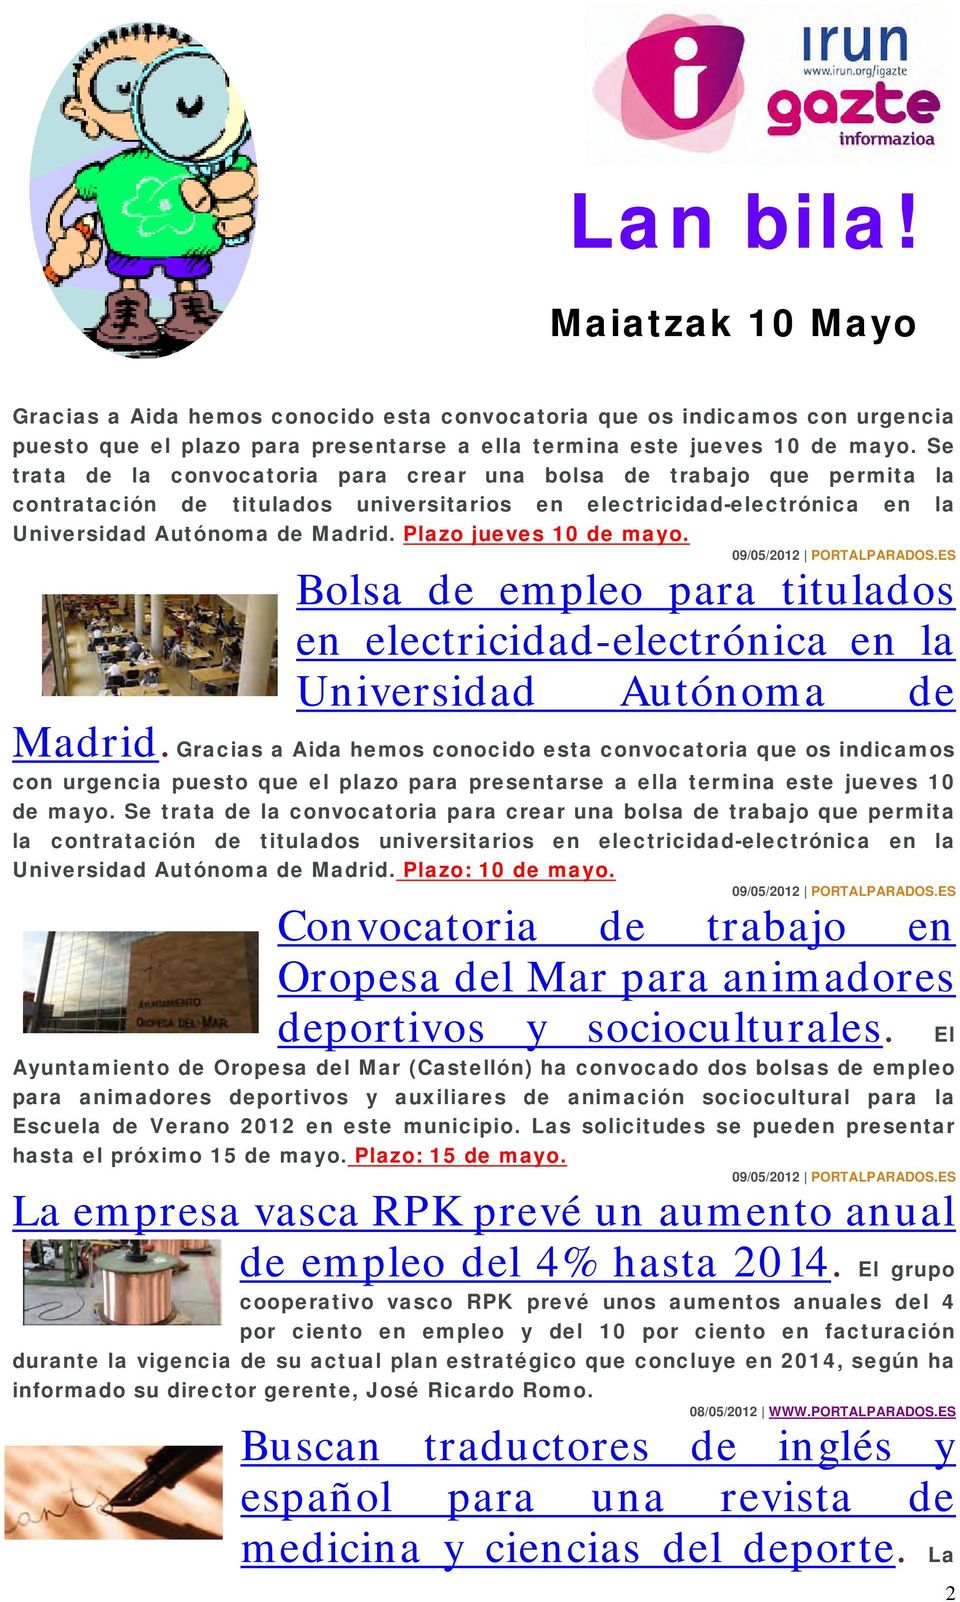 Plazo jueves 10 de mayo. 09/05/2012 PORTALPARADOS.ES Bolsa de empleo para titulados en electricidad-electrónica en la Universidad Autónoma de Madrid.